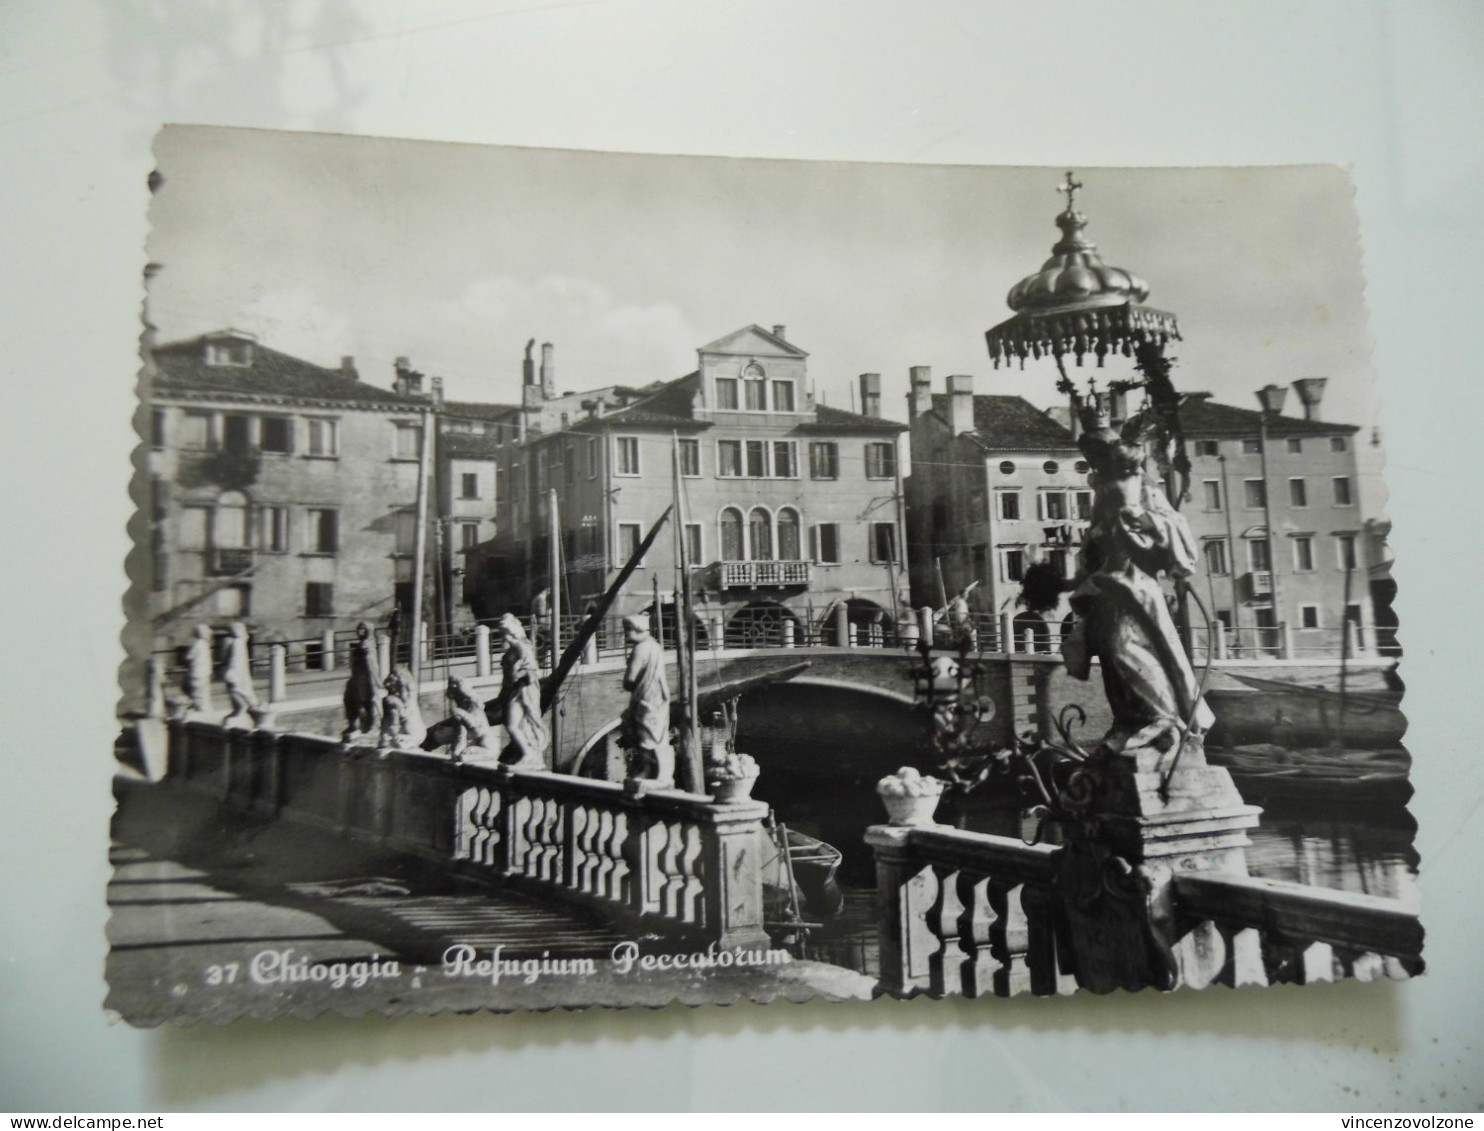 Cartolina Viaggiata "CHIOGGIA Refugium Peccatorum"  1954 - Chioggia